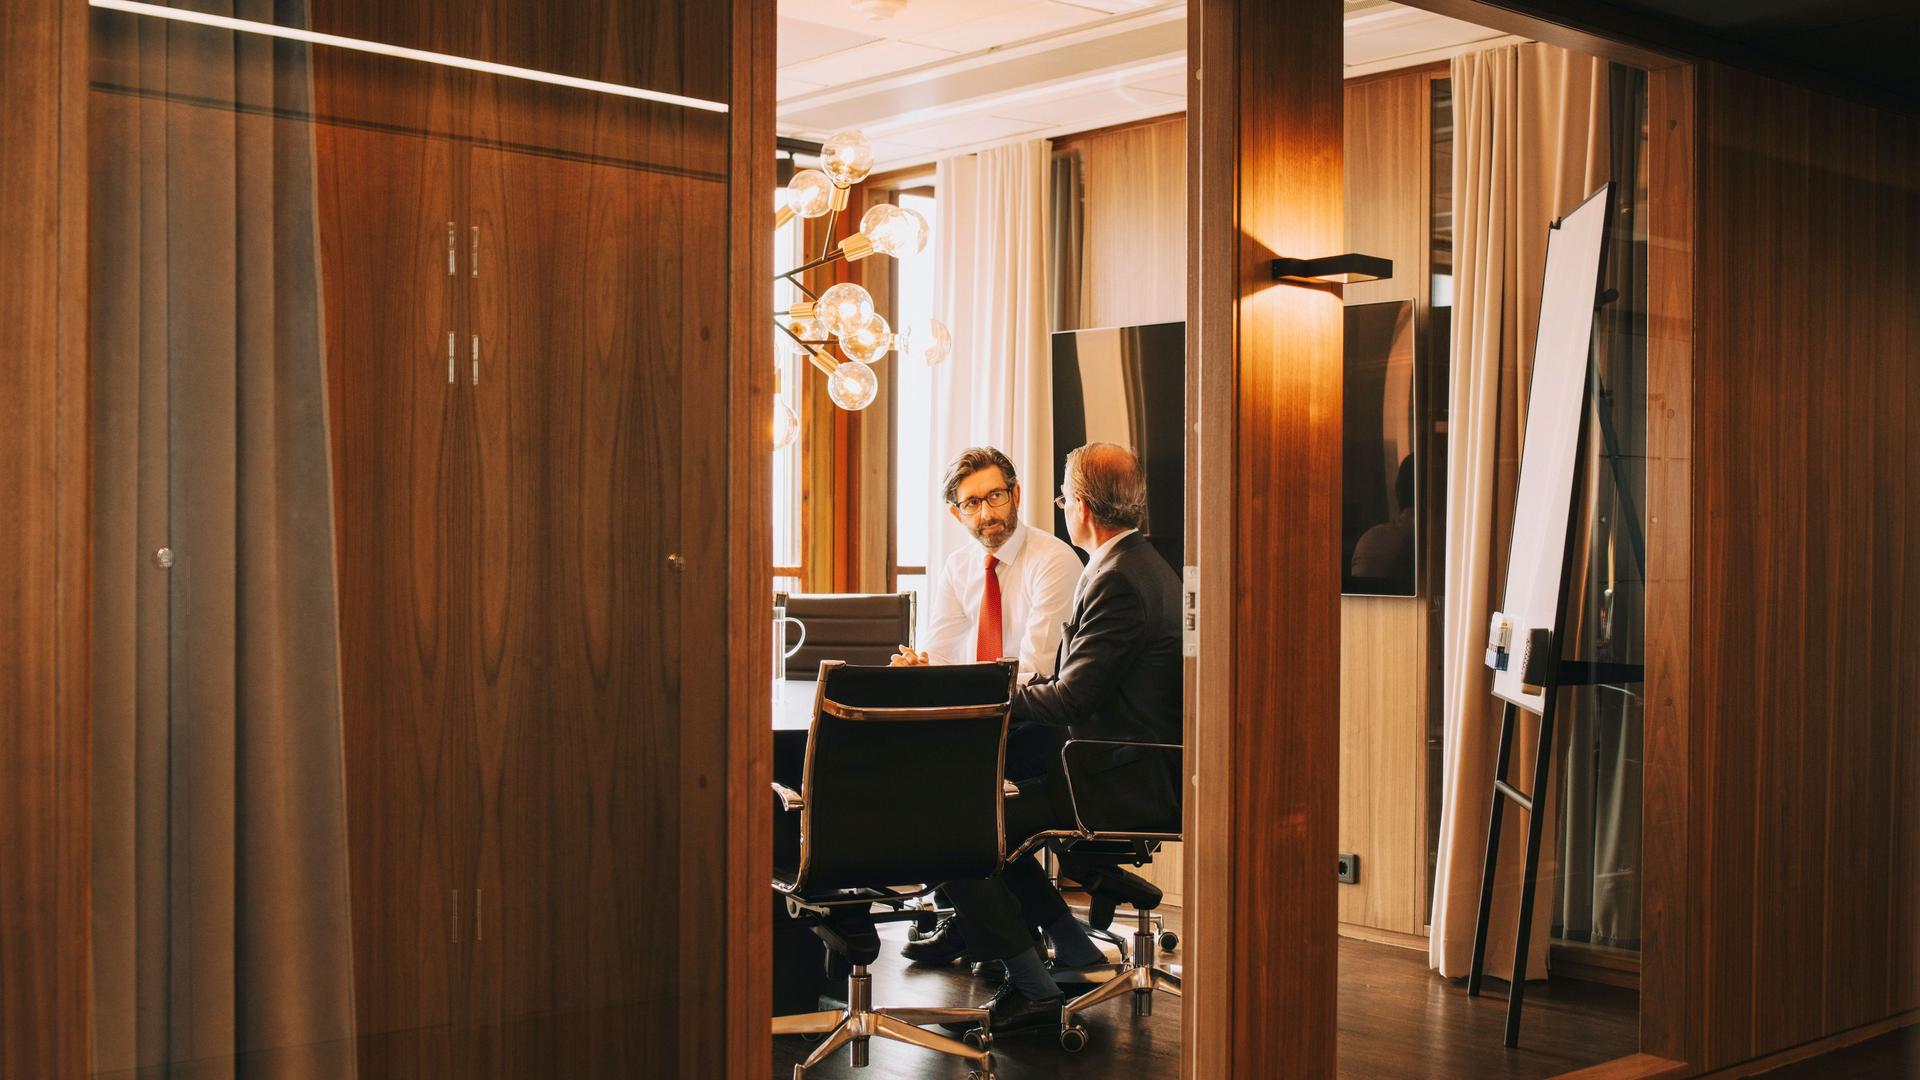 Zwei Männer mittleren Alters sitzen in einem Meeting Raum. Hinter ihnen ist ein großer Bildschirm und ein Whiteboard zu sehen.